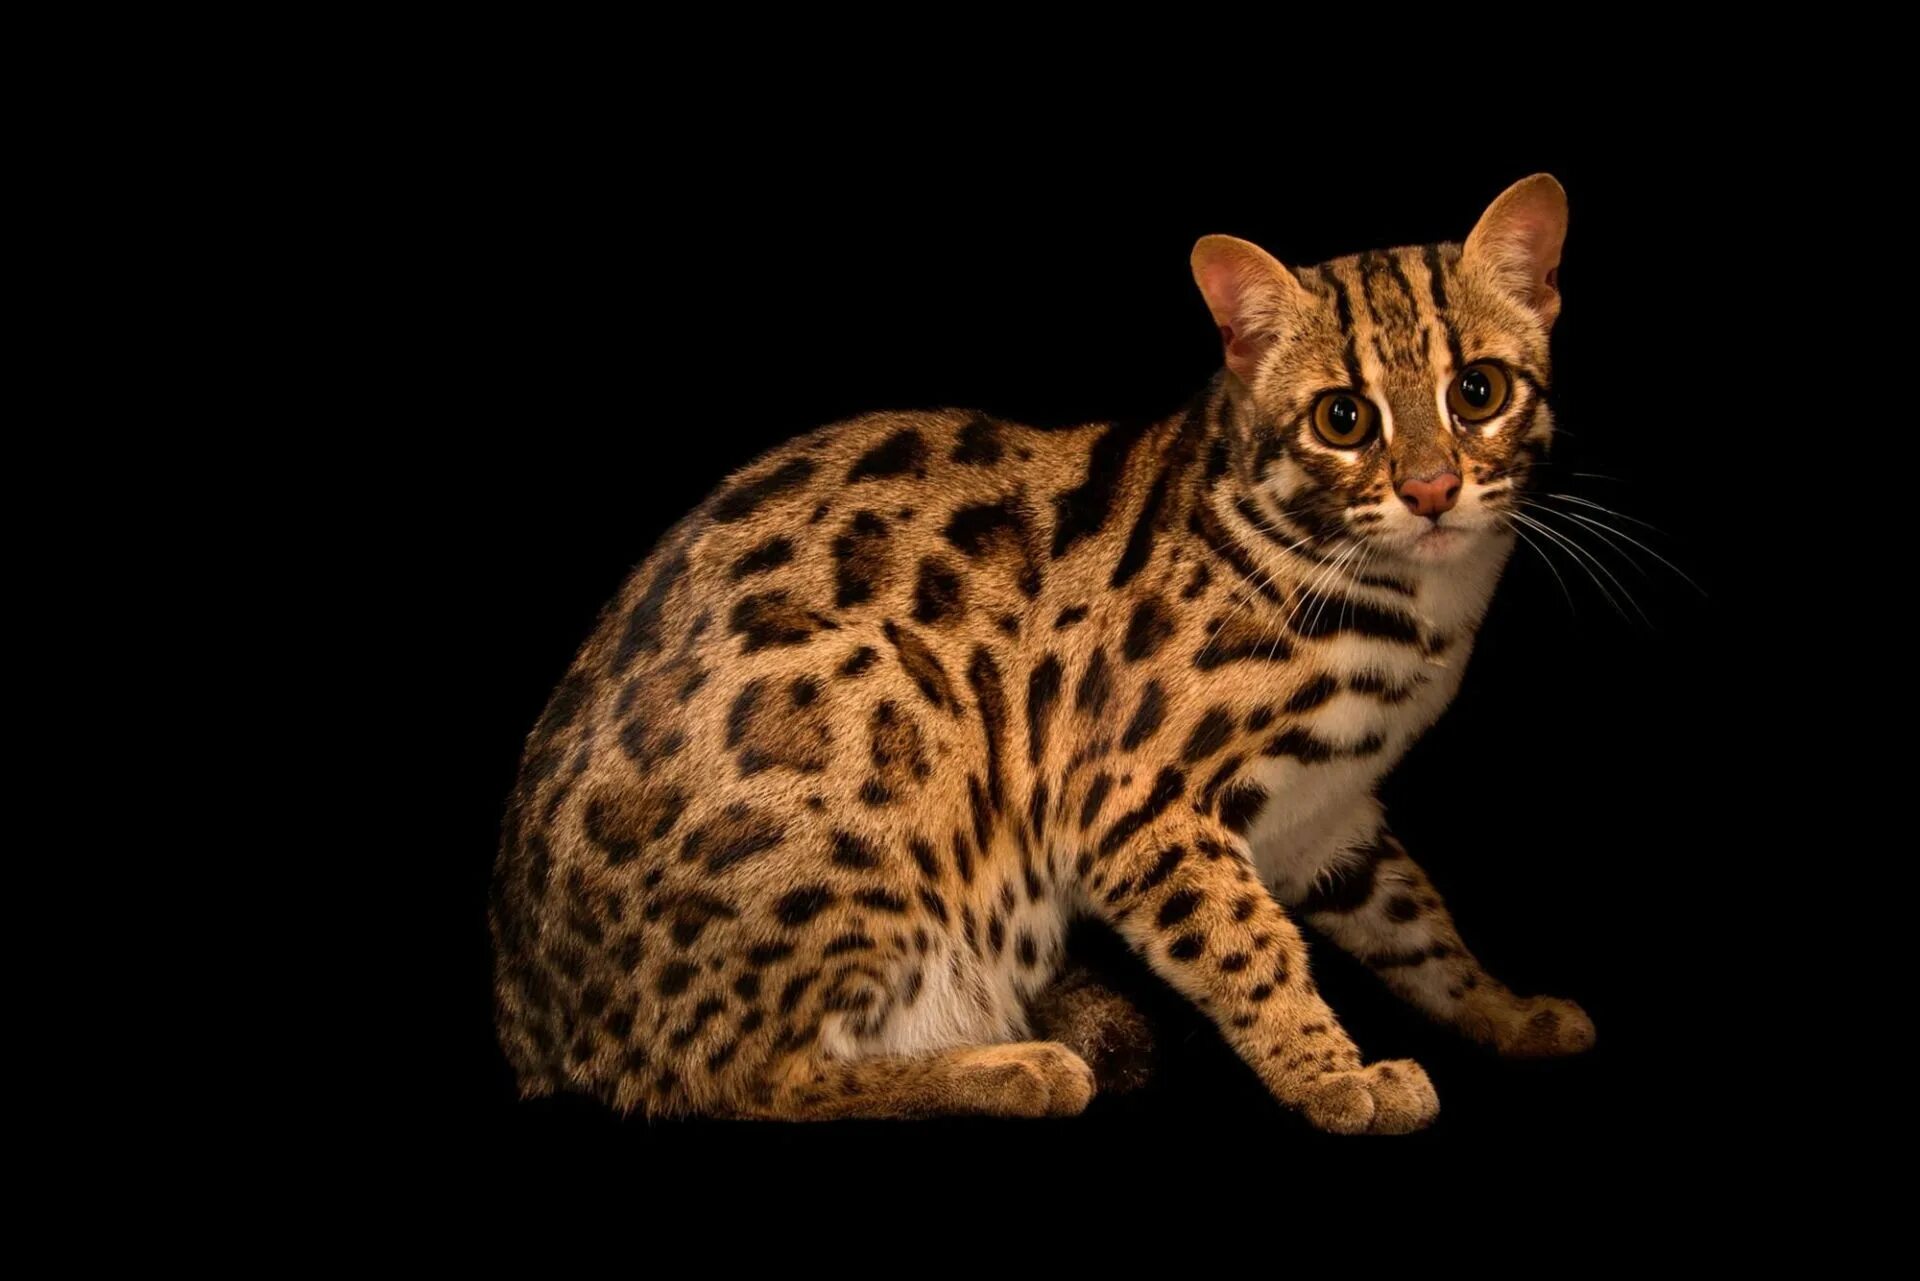 Рассмотрите фотографию пятнистой кошки породы бенгальская. Бенгальская кошка. Леопардовый кот Prionailurus bengalensis. Кошки бенгальской породы. Бенгальская кошка окрас леопард.